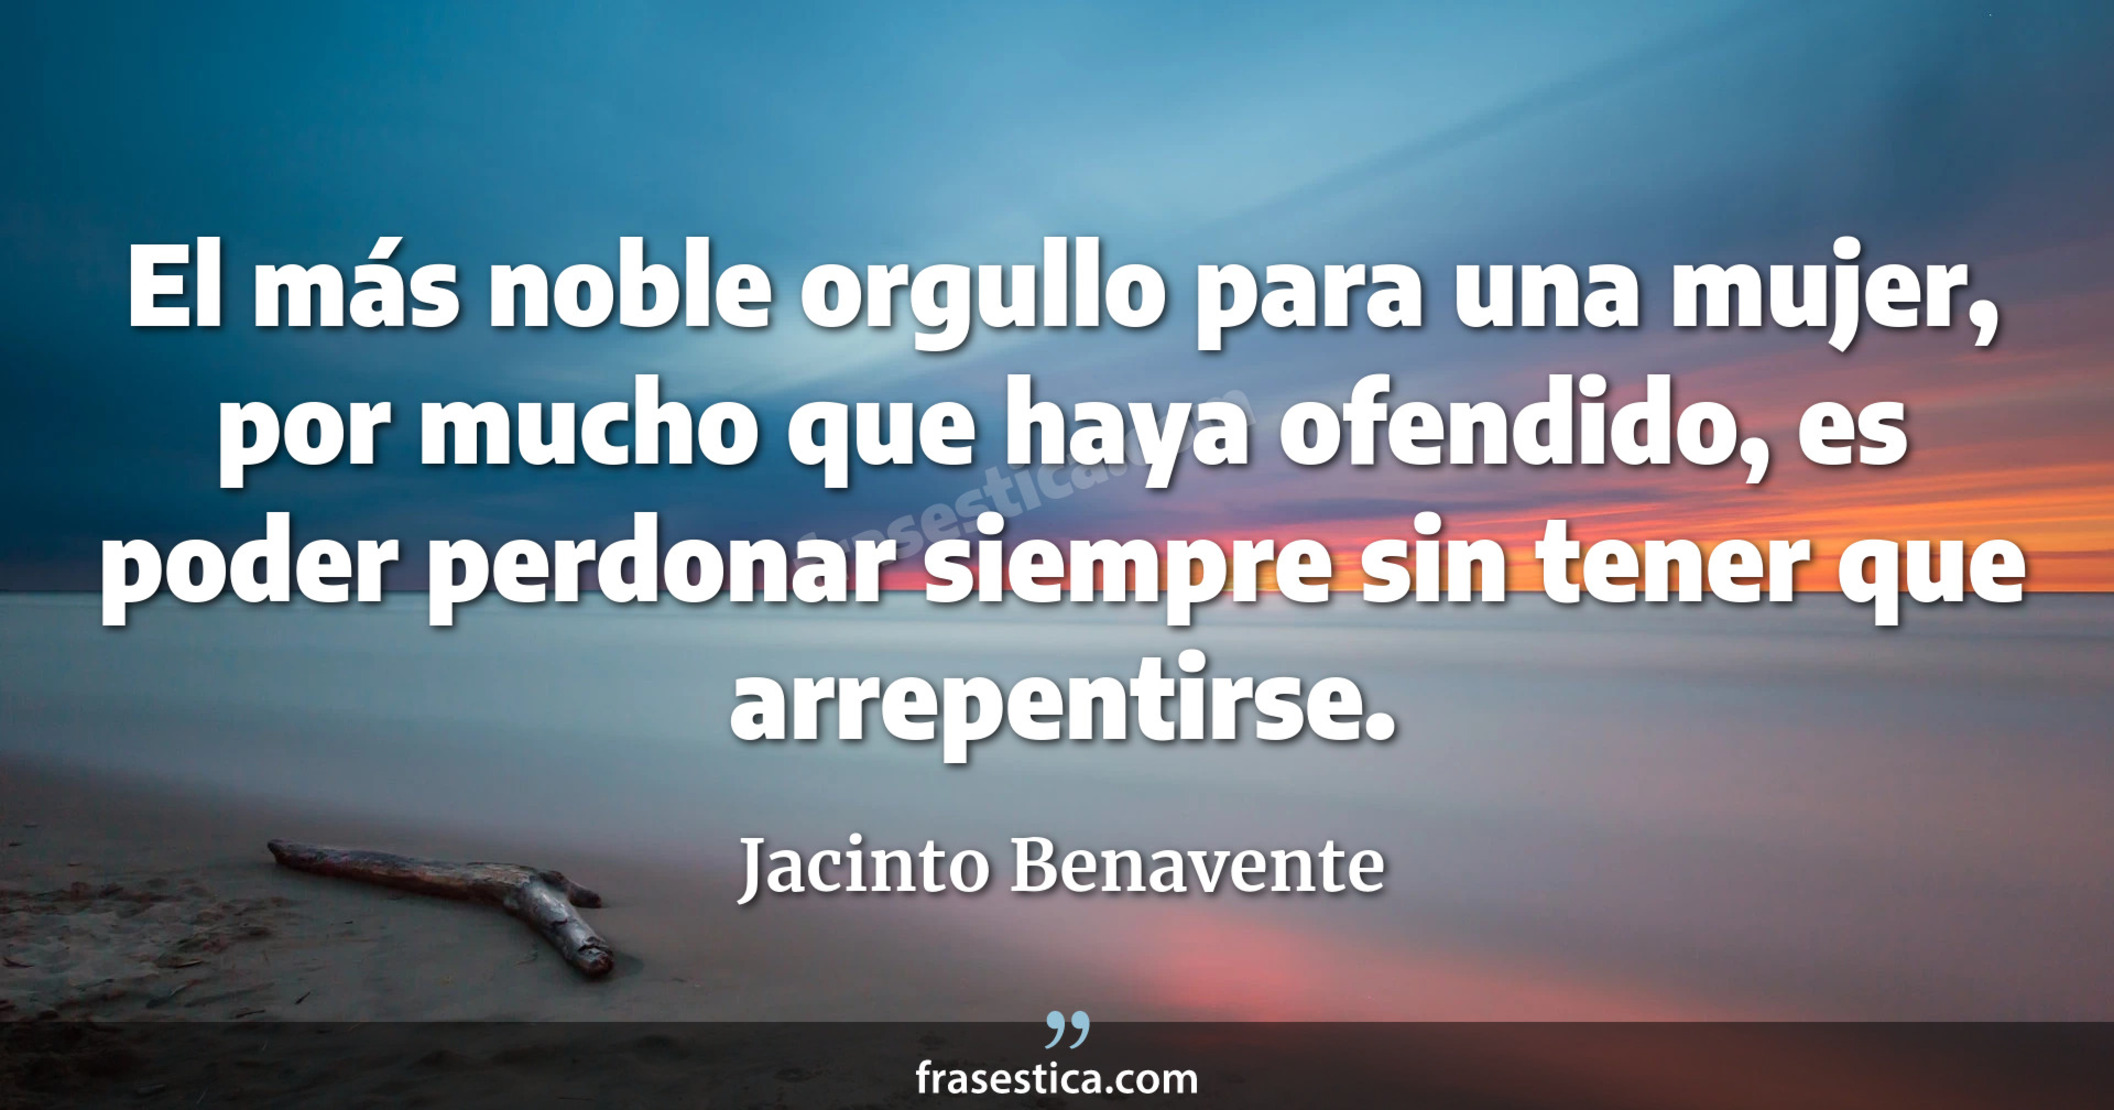 El más noble orgullo para una mujer, por mucho que haya ofendido, es poder perdonar siempre sin tener que arrepentirse. - Jacinto Benavente